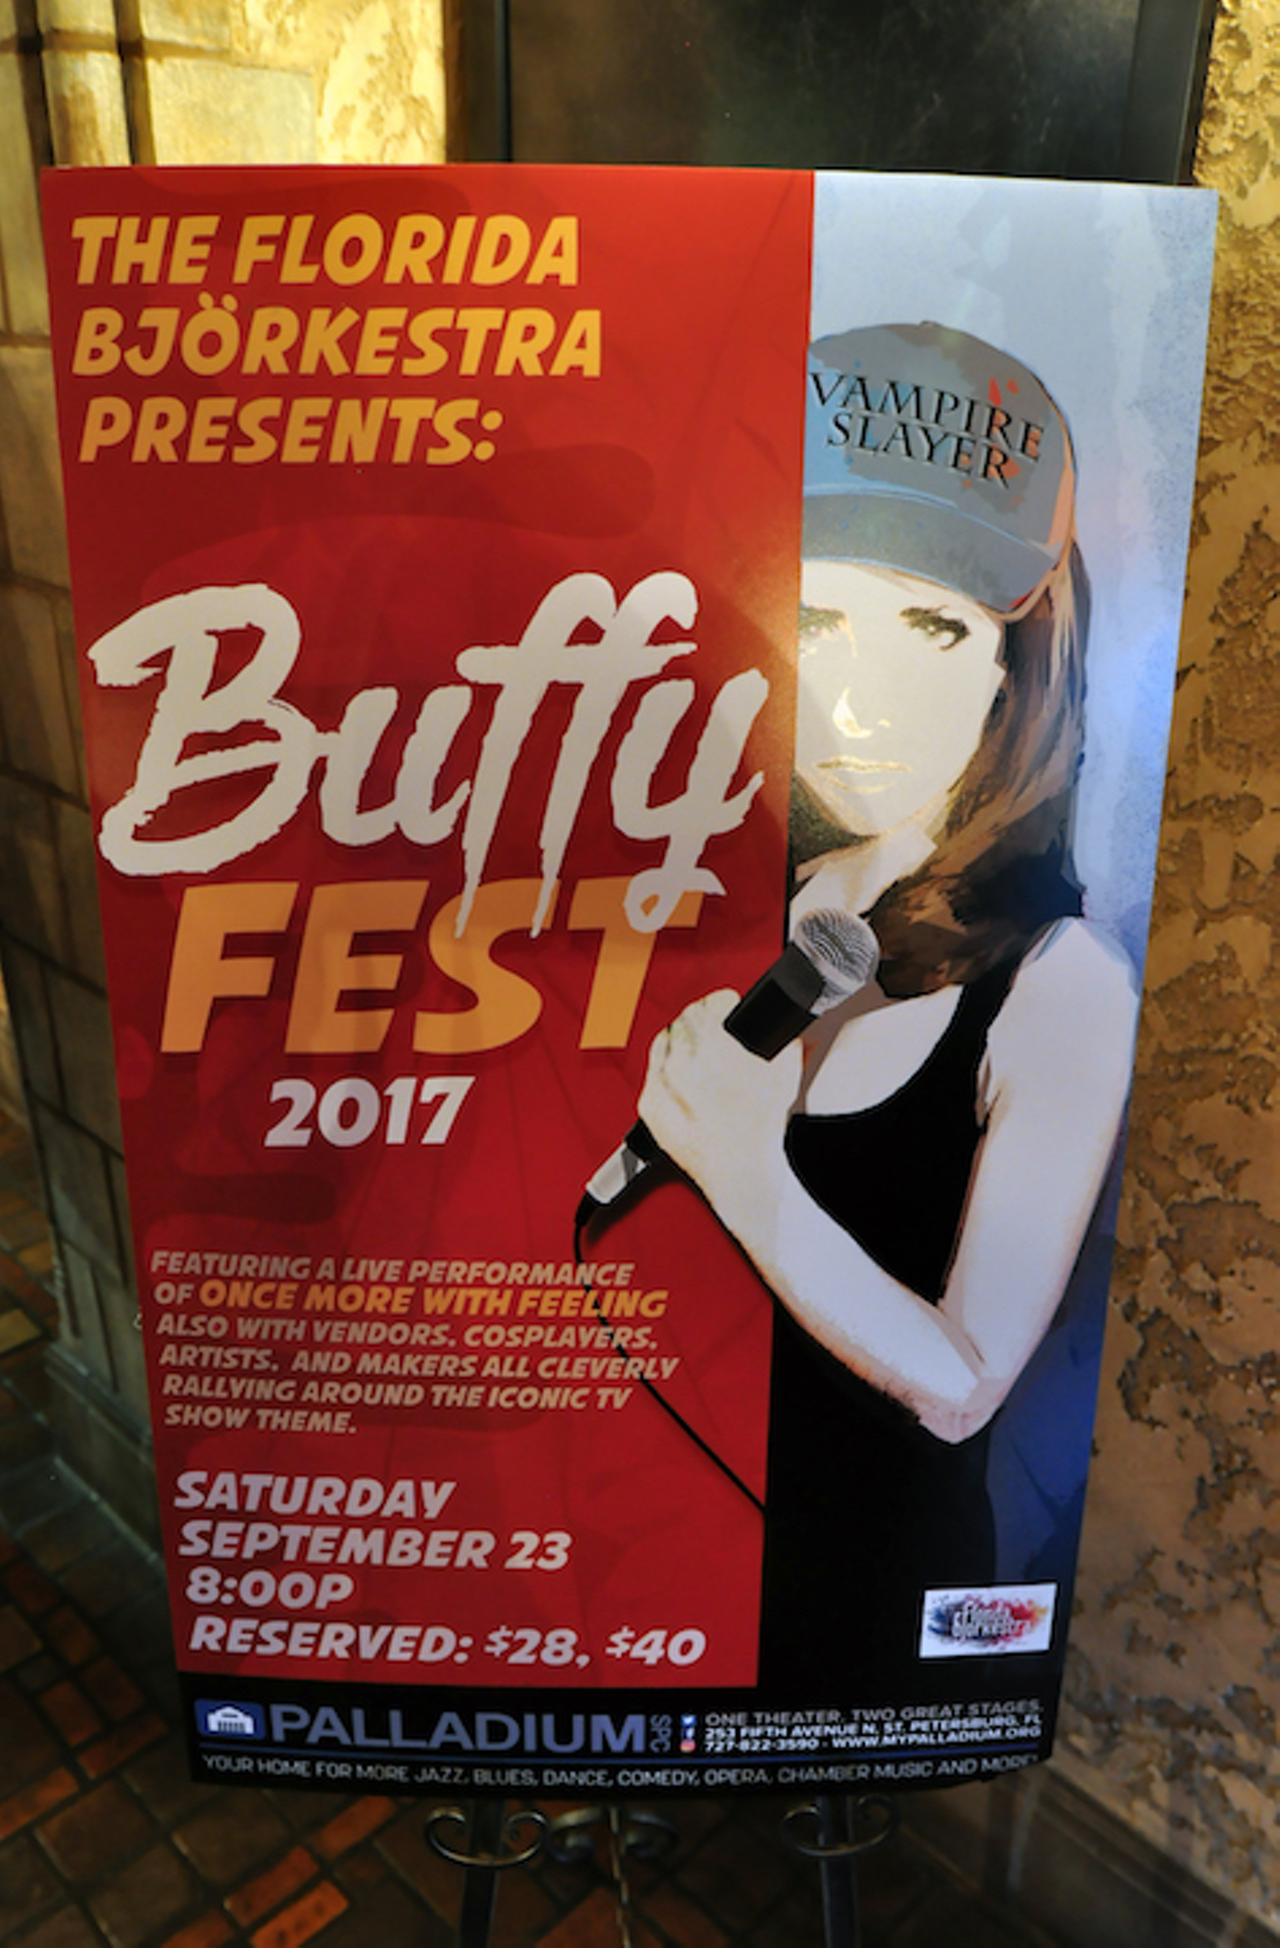 Buffyfest at Palladium Theater in St. Petersburg, Florida on September 23, 2017.